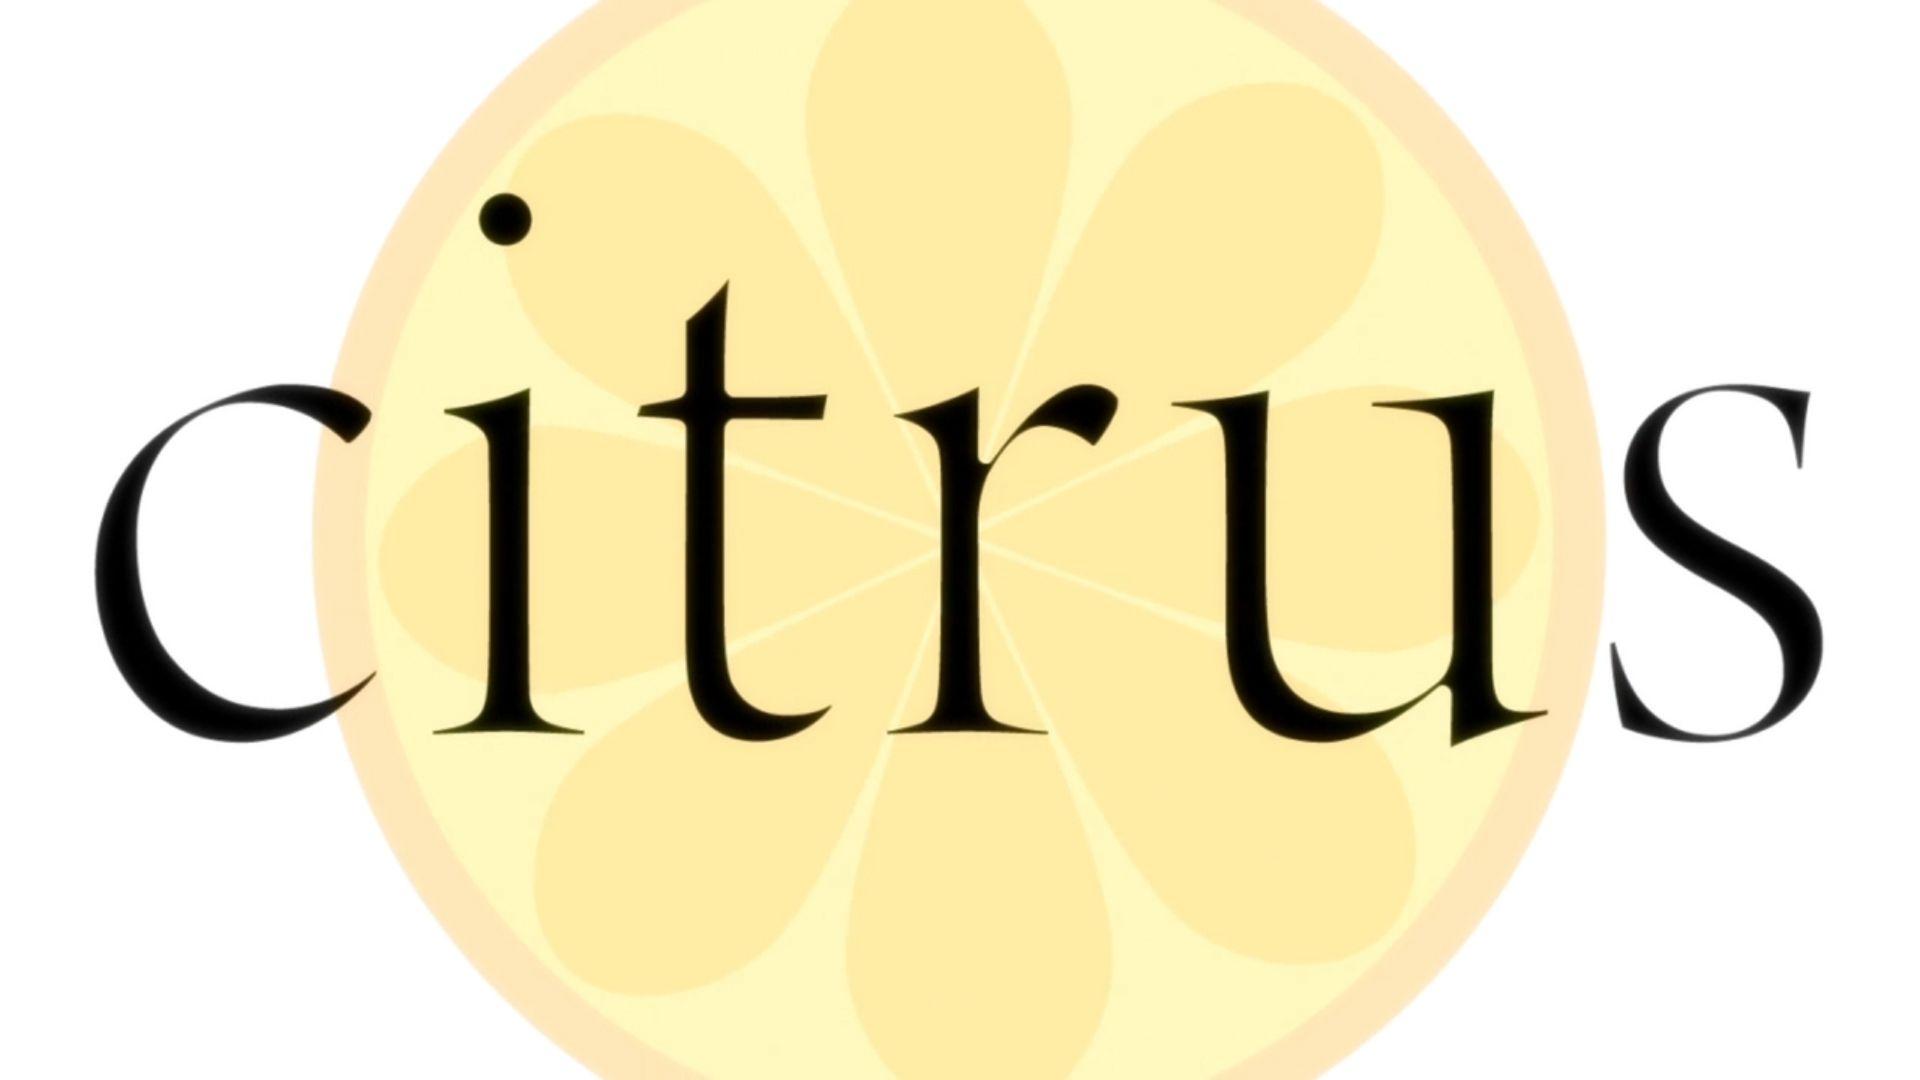 Citrus Logo - Citrus Review